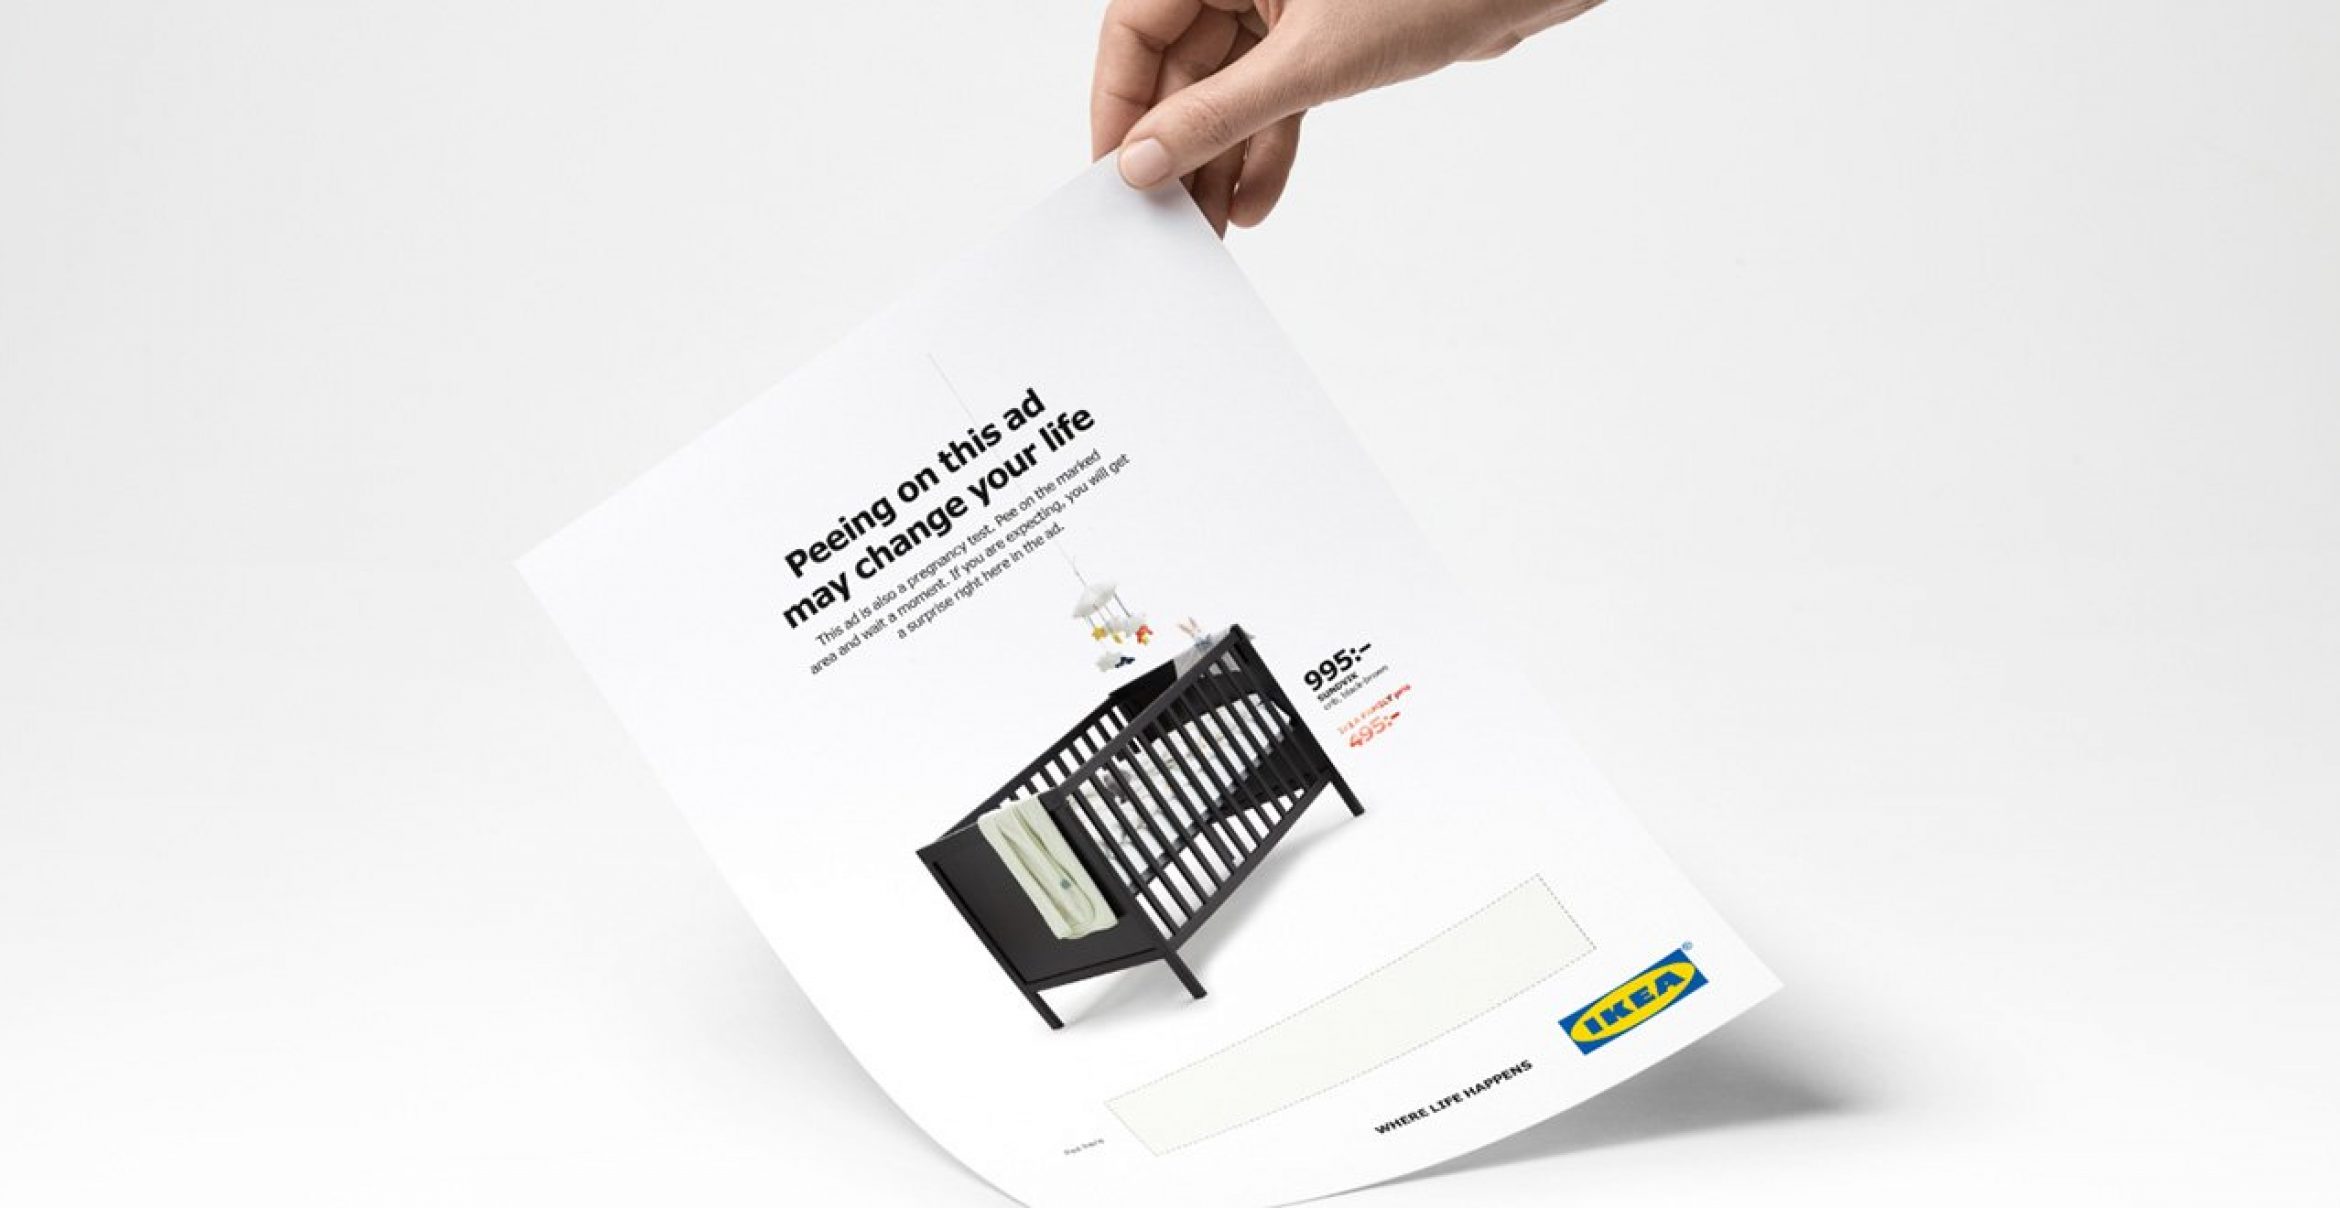 Rabatt-Aktion: Deswegen motiviert Ikea Frauen in ein Magazin zu pinkeln